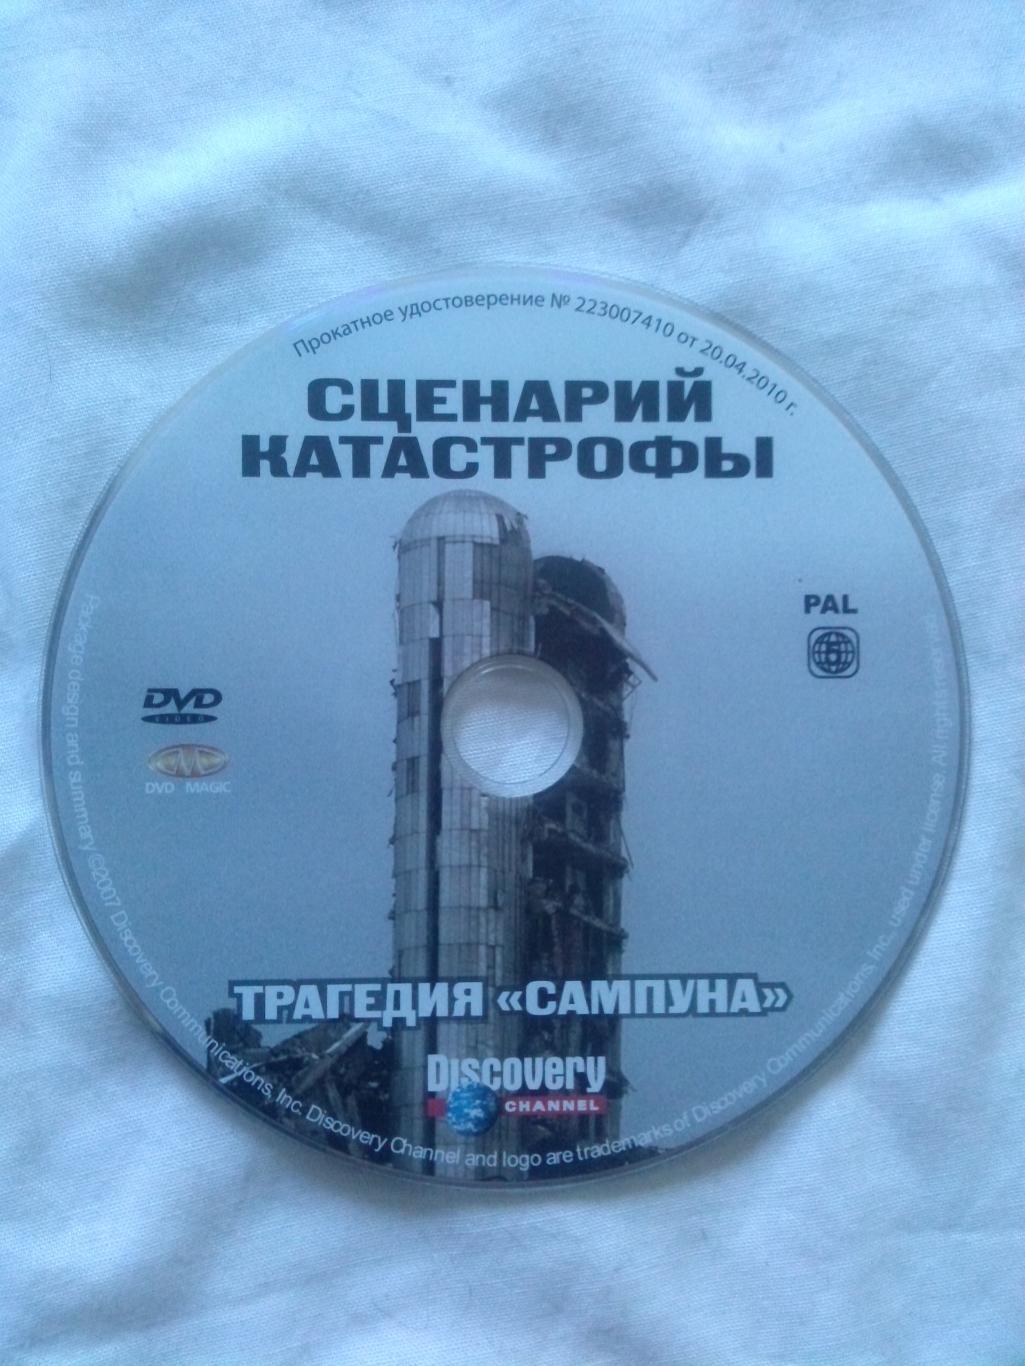 DVD Discovery лицензия документальное кино Сценарий катастрофы Традегия Сампуна 3